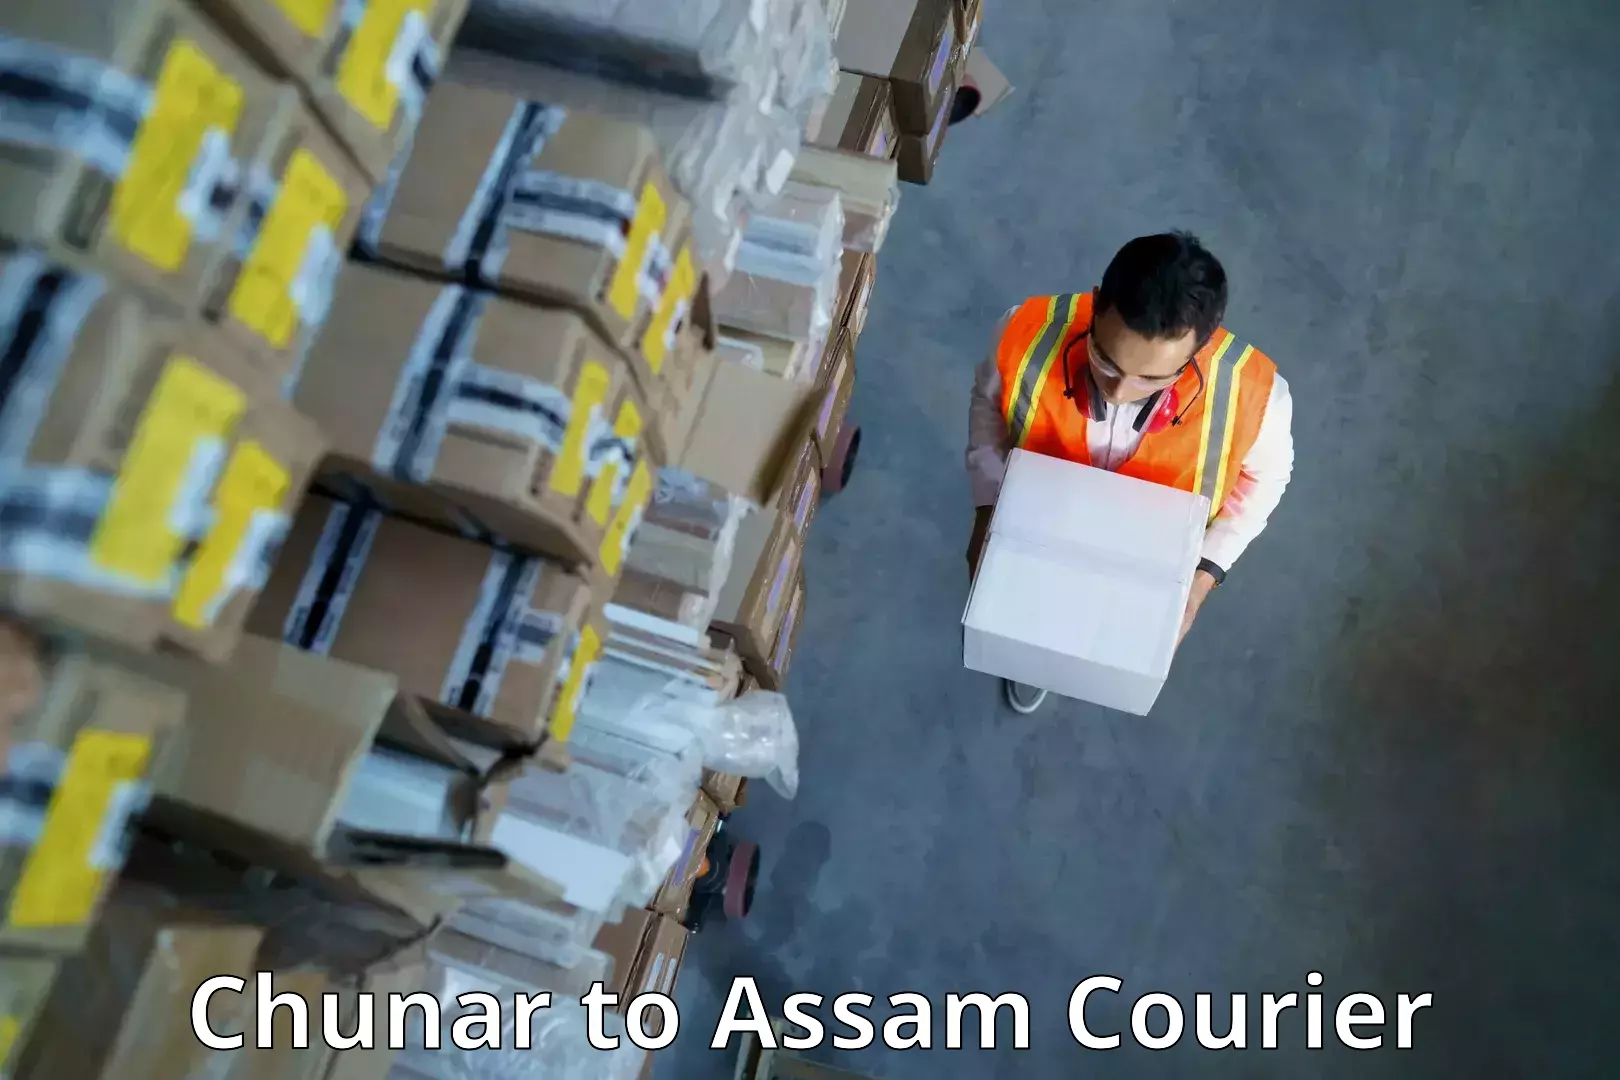 Express mail service Chunar to Assam